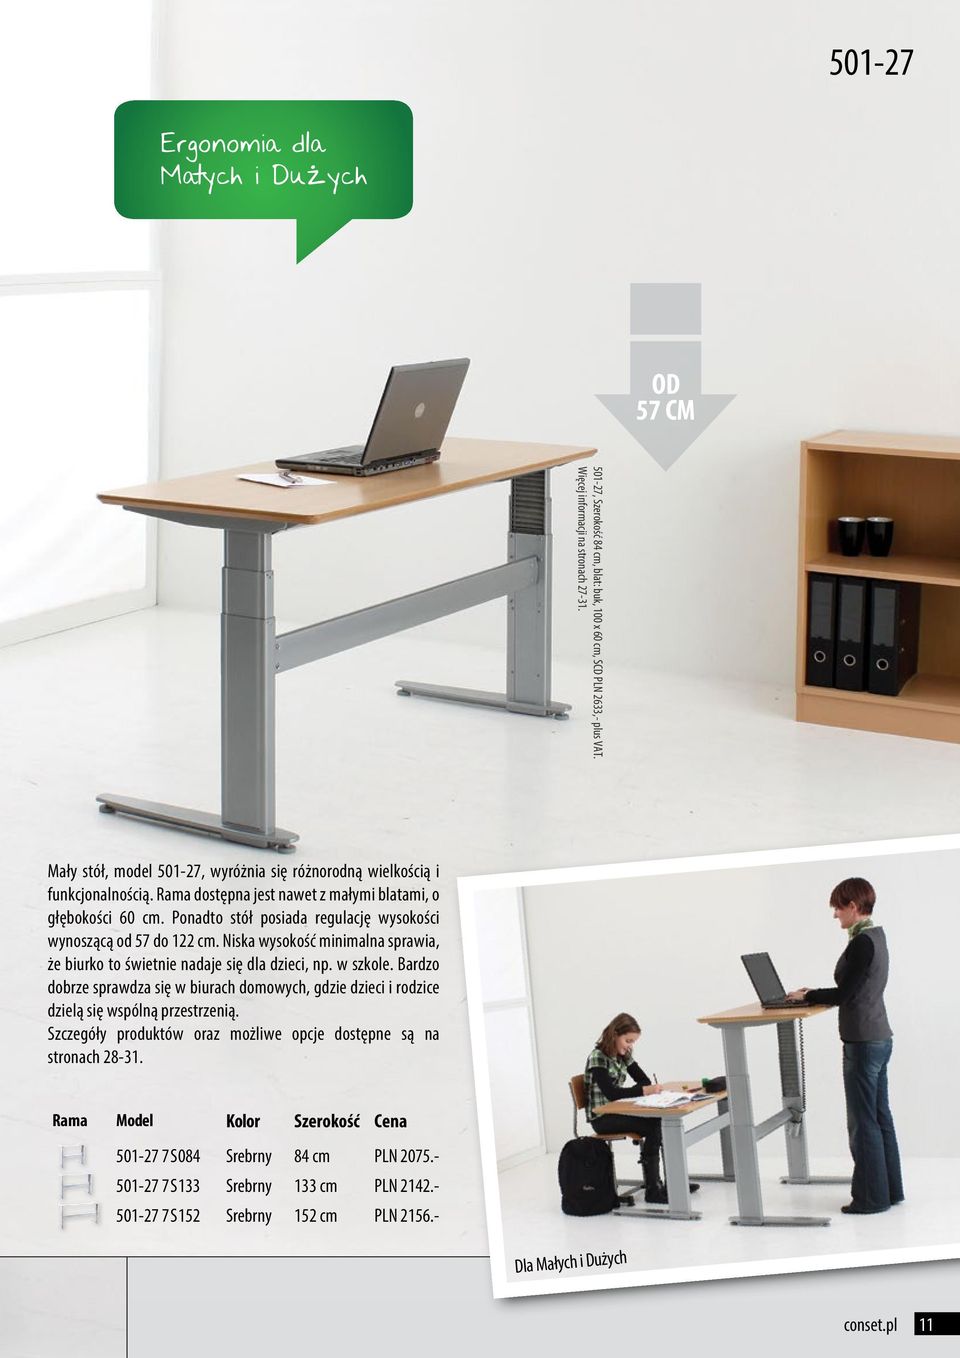 Ponadto stół posiada regulację wysokości wynoszącą od 57 do 122 cm. Niska wysokość minimalna sprawia, że biurko to świetnie nadaje się dla dzieci, np. w szkole.